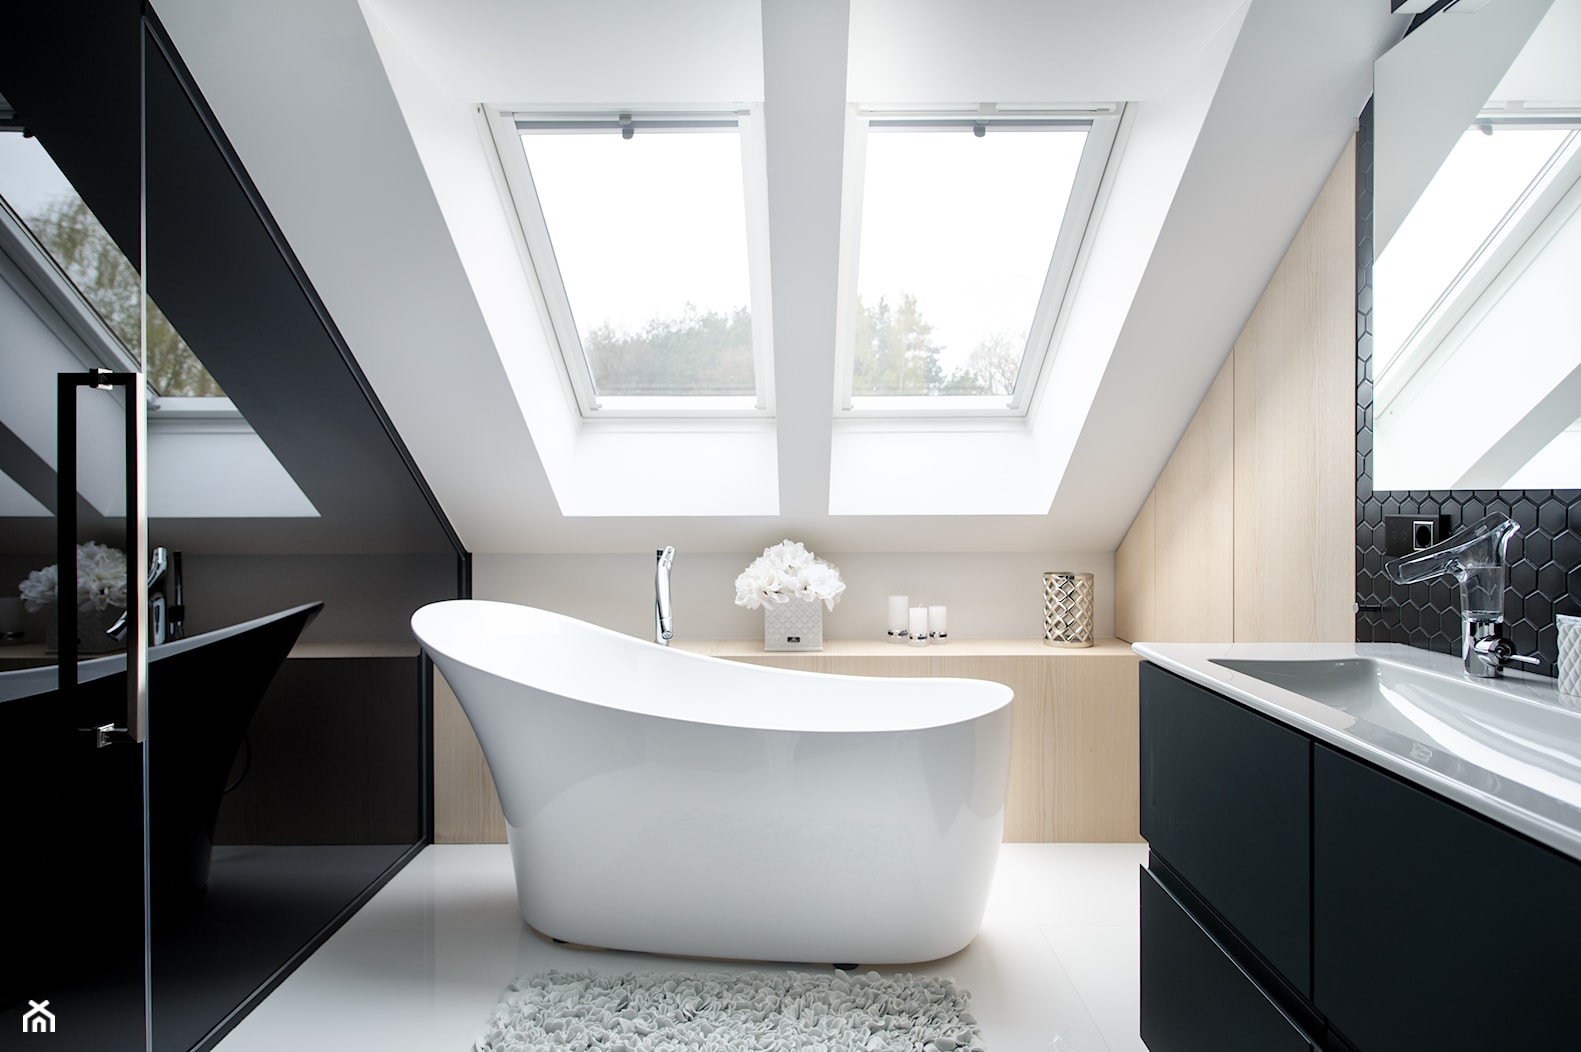 Projekt łazienki - Heksagon, duży, czarny, matowy - Średnia na poddaszu łazienka z oknem, styl minimalistyczny - zdjęcie od Raw Decor - Homebook